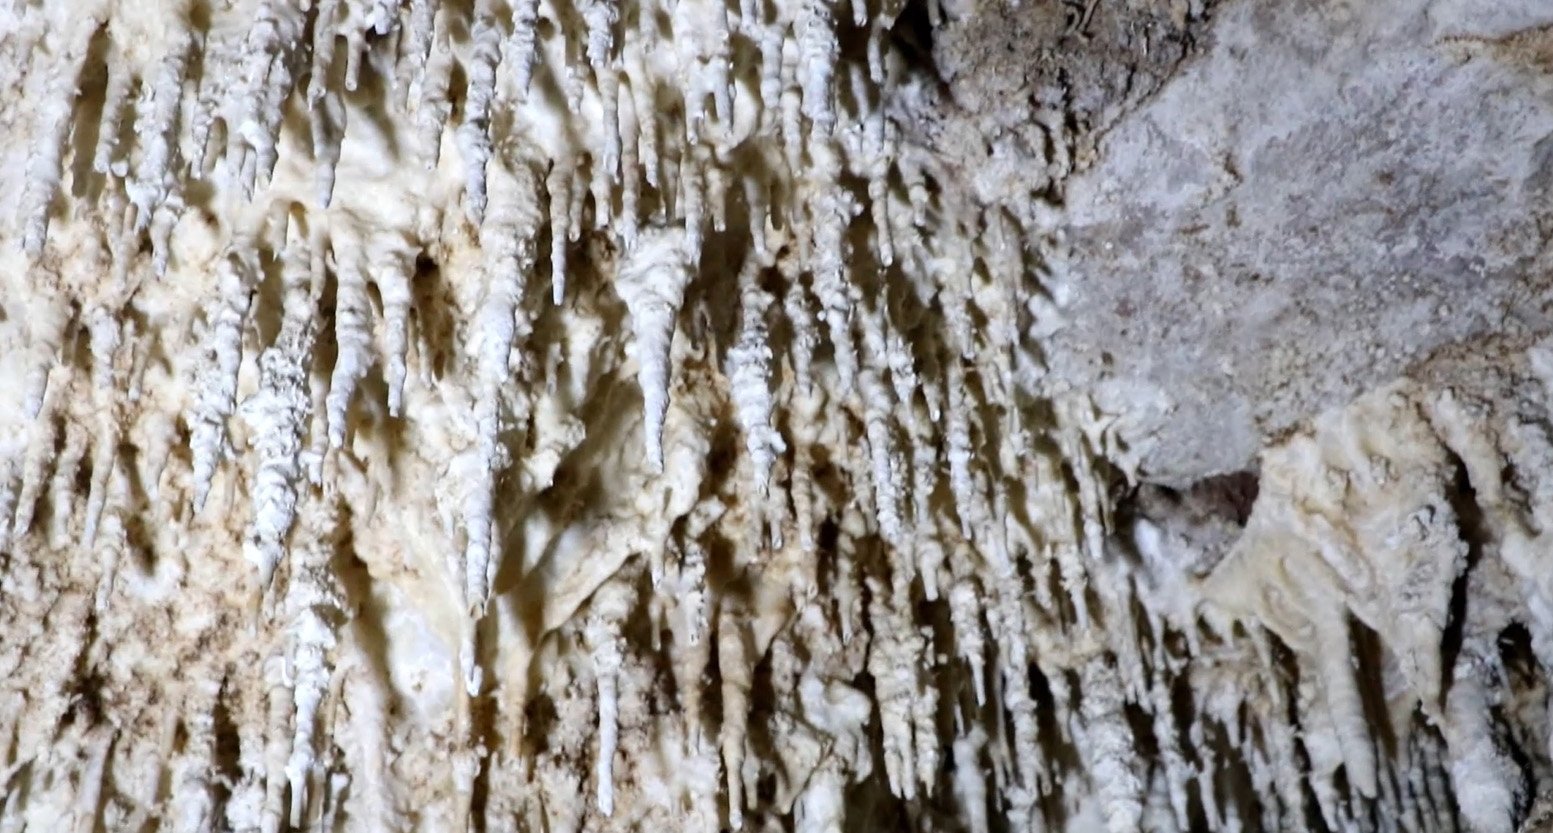 ค้นพบถ้ำใหม่ ต้องมุดเข้าไป แต่ข้างในเป็นโถงใหญ่ หินงอกหินย้อยสะท้อนแสงเหมือนคริสตัล